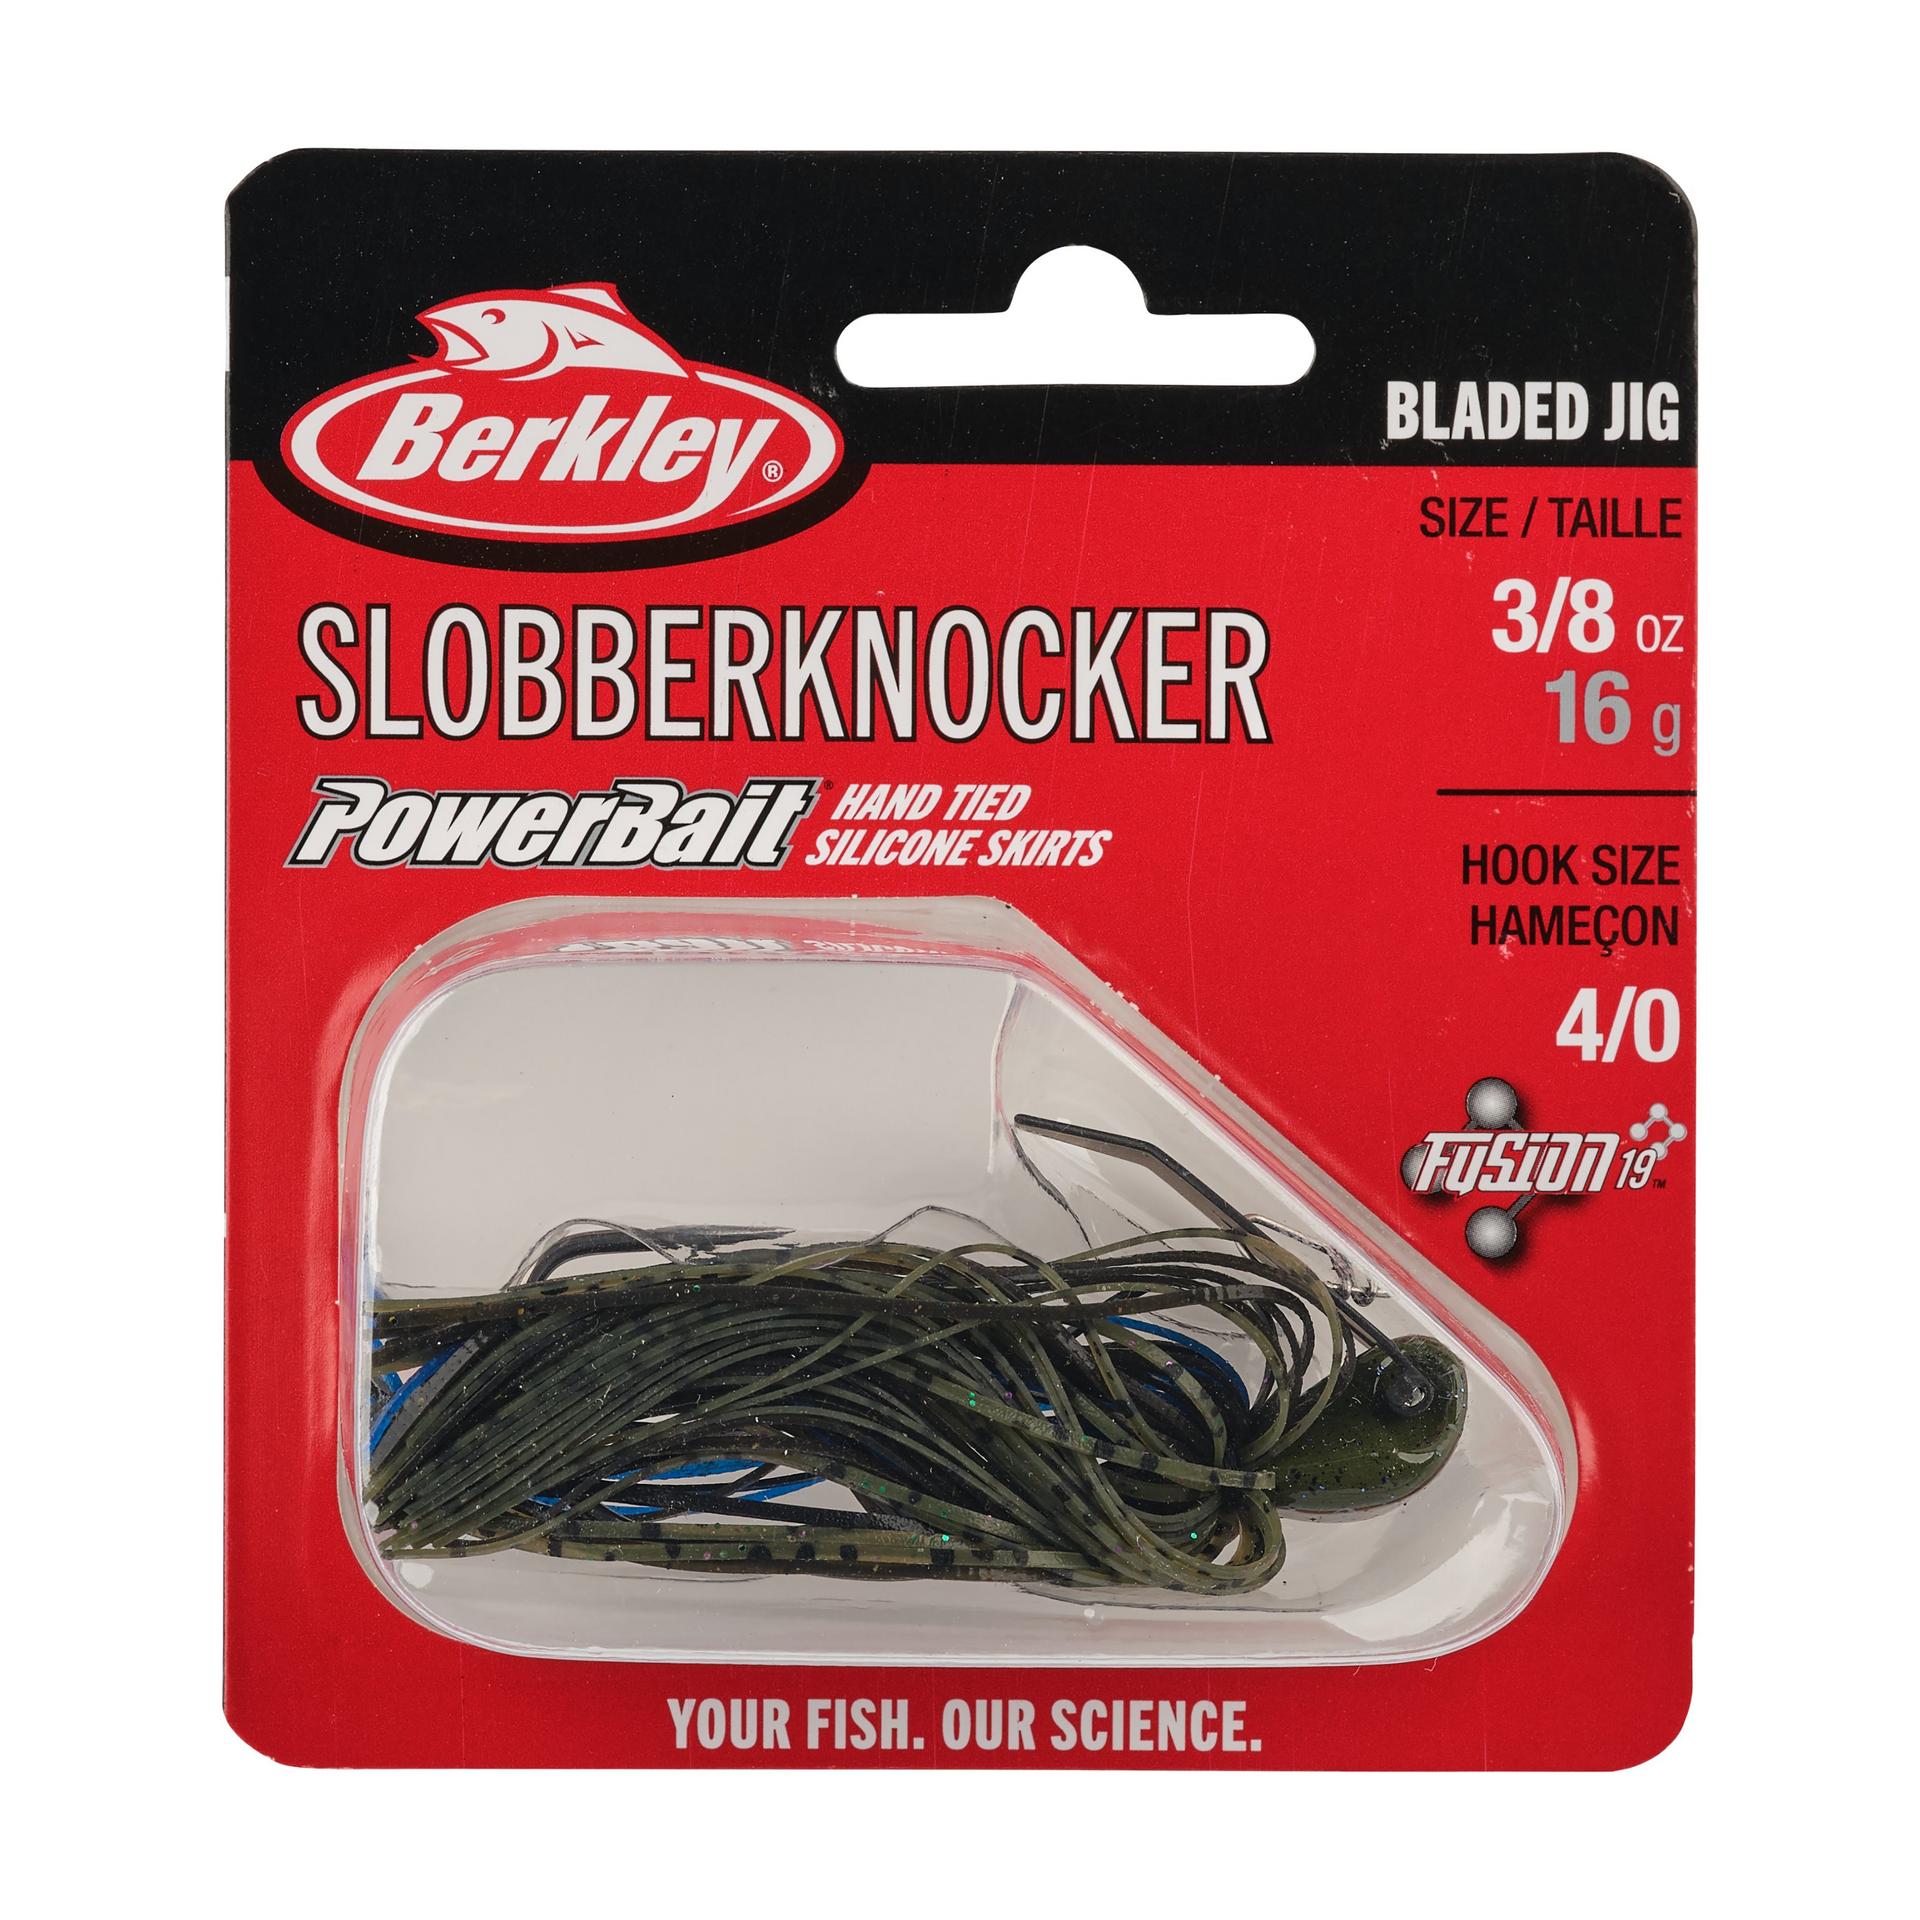 Berkley SlobberKnocker 3 8oz Bruised PKG | Berkley Fishing